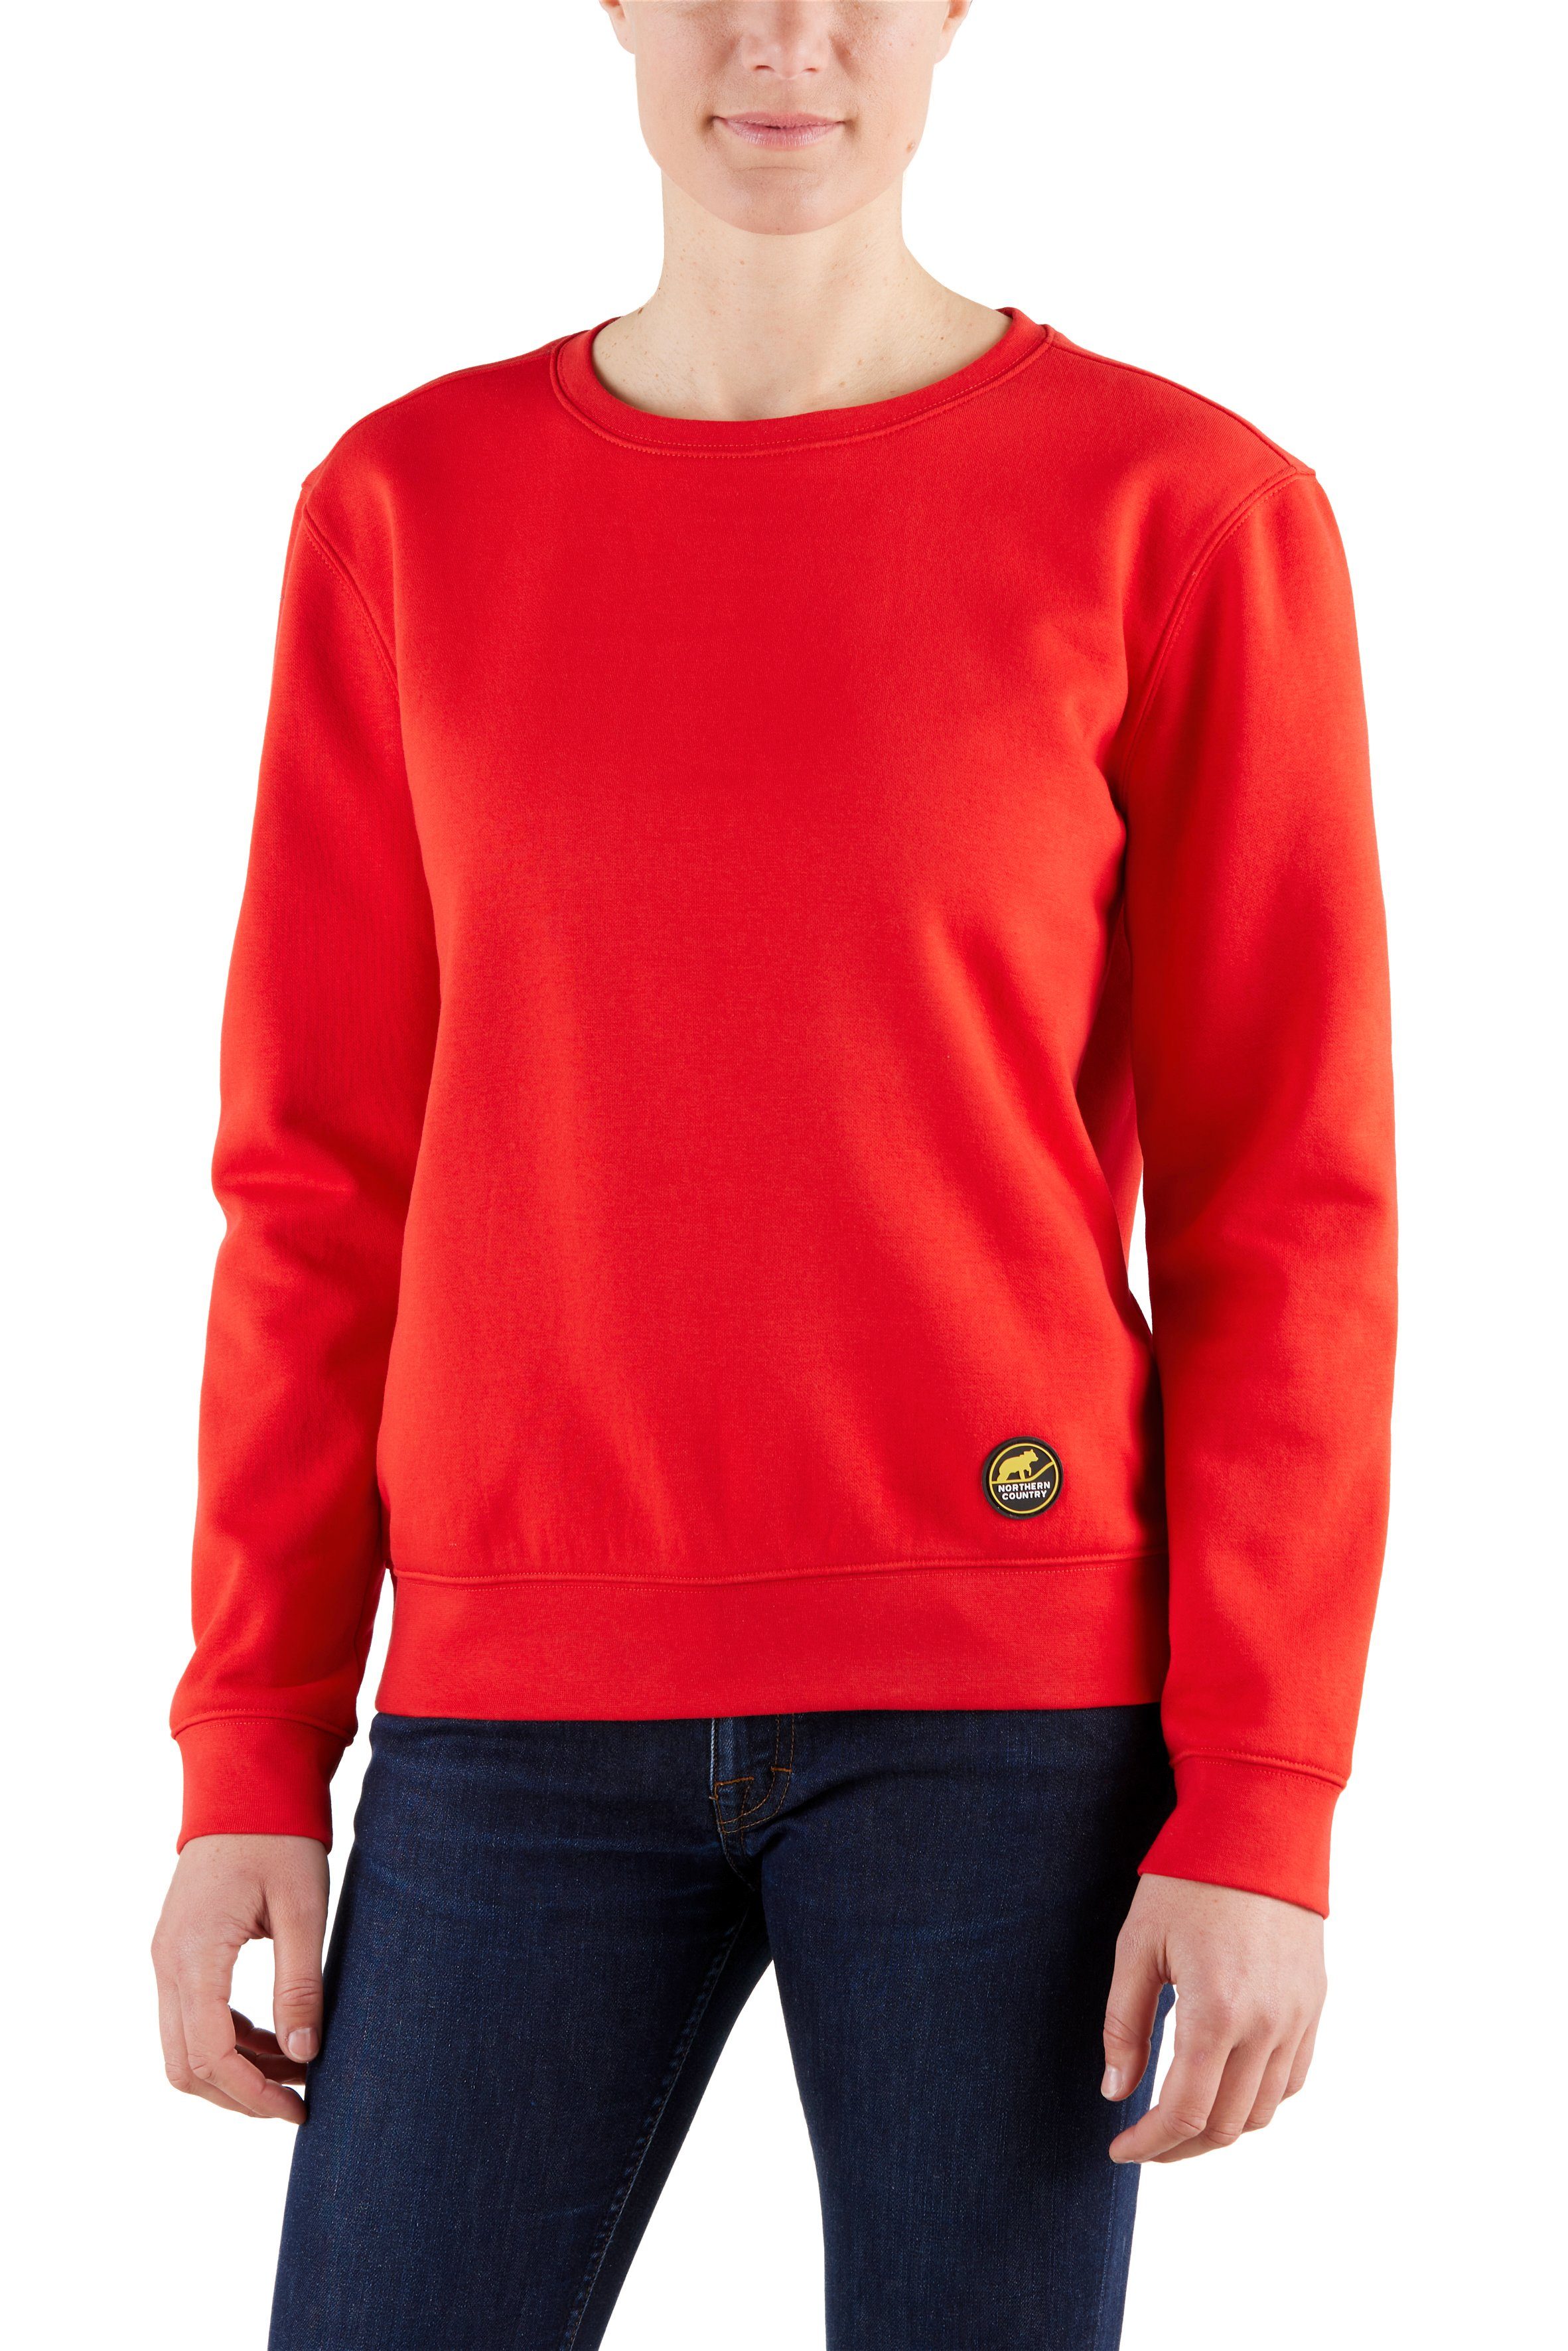 Northern Country Sweatshirt für Red Baumwollmix, sich trägt soften Fiery locker Damen und leicht aus